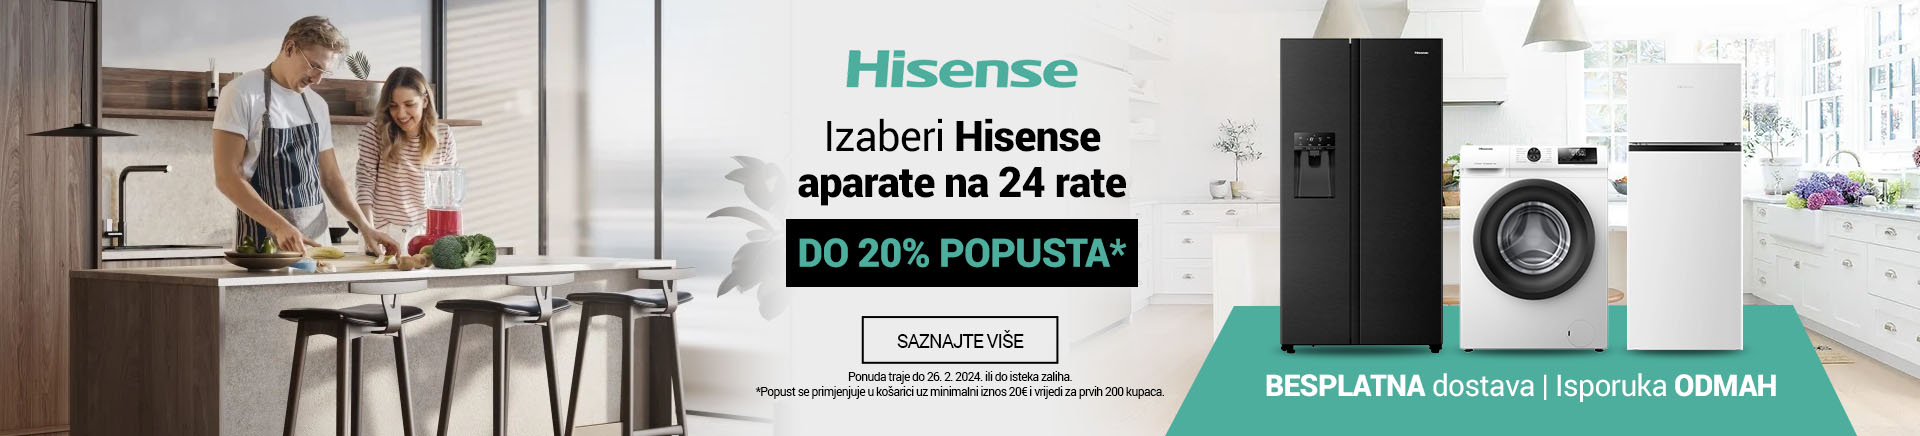 HR Hisense Aparati 24 rate 20posto Kosarica MOBILE za APP 760x872.jpg